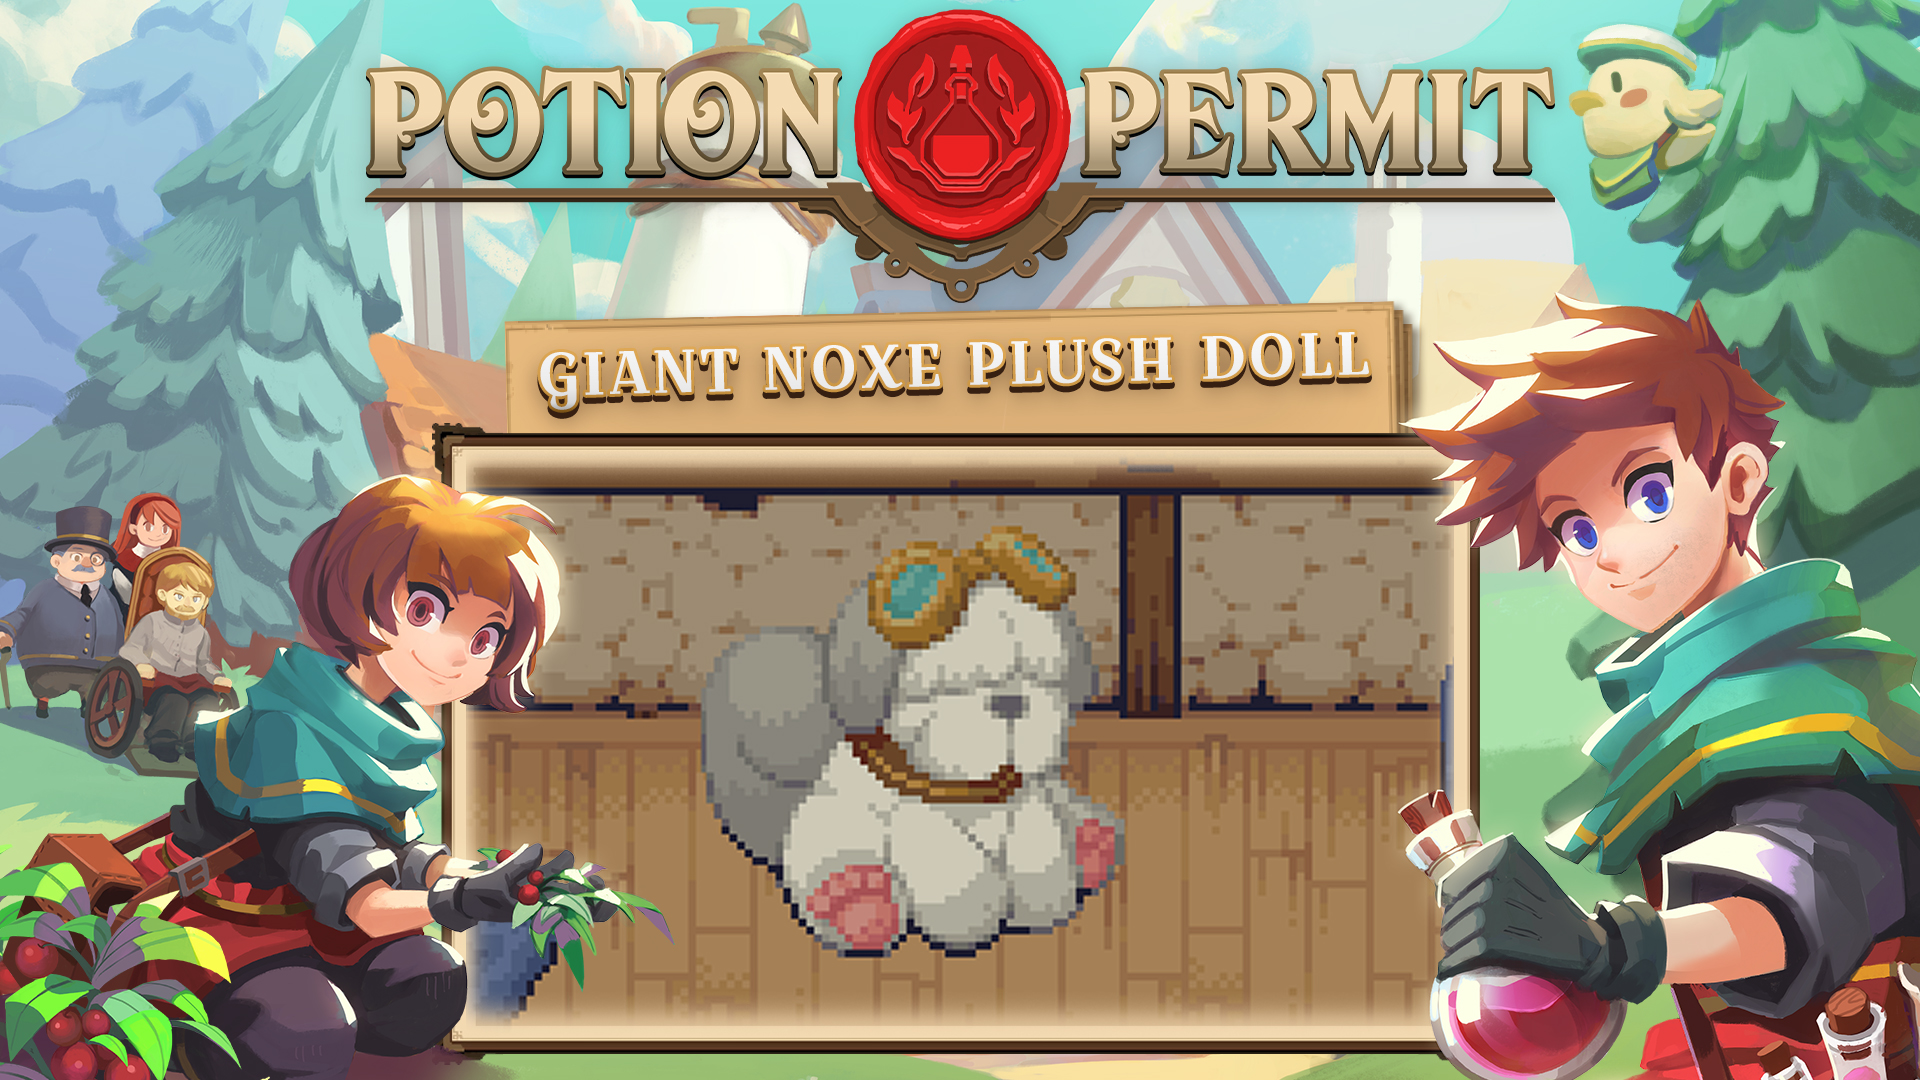 Potion Permit - Giant Noxe Plush Doll